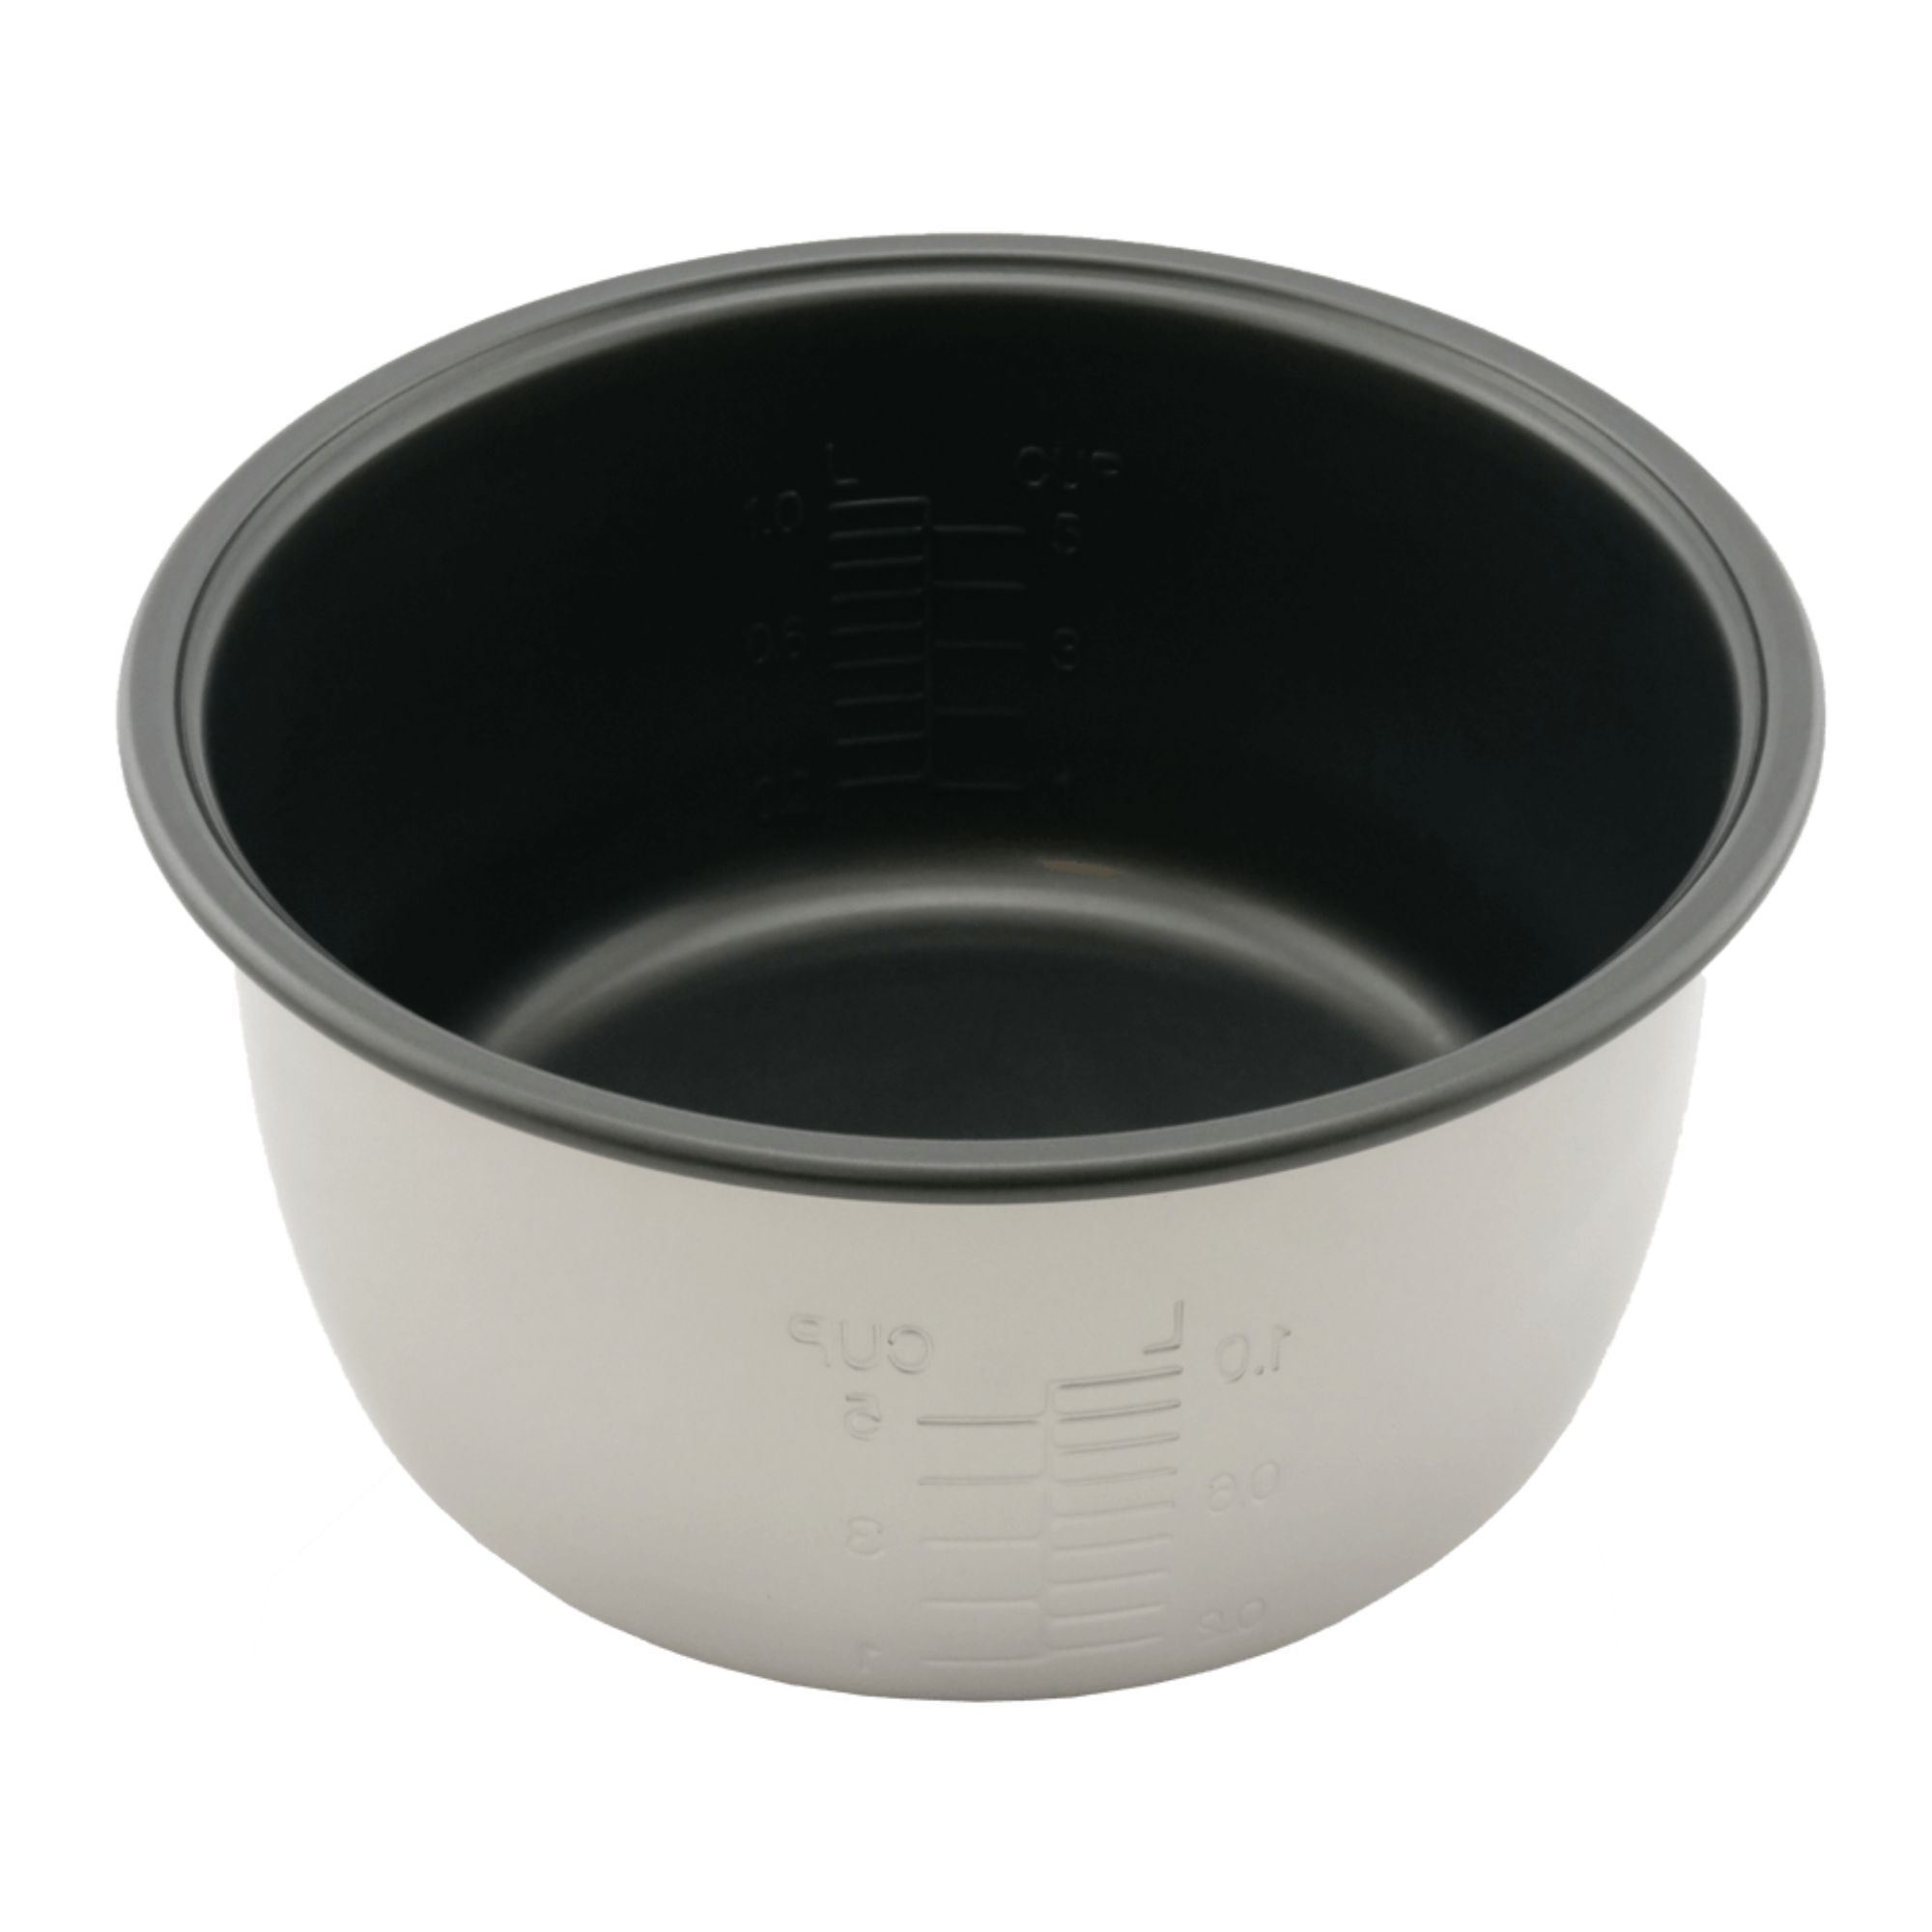 Оригинальная чаша (кастрюля) с угольным покрытием BINCHO для мультиварки Panasonic  SR-TMH18